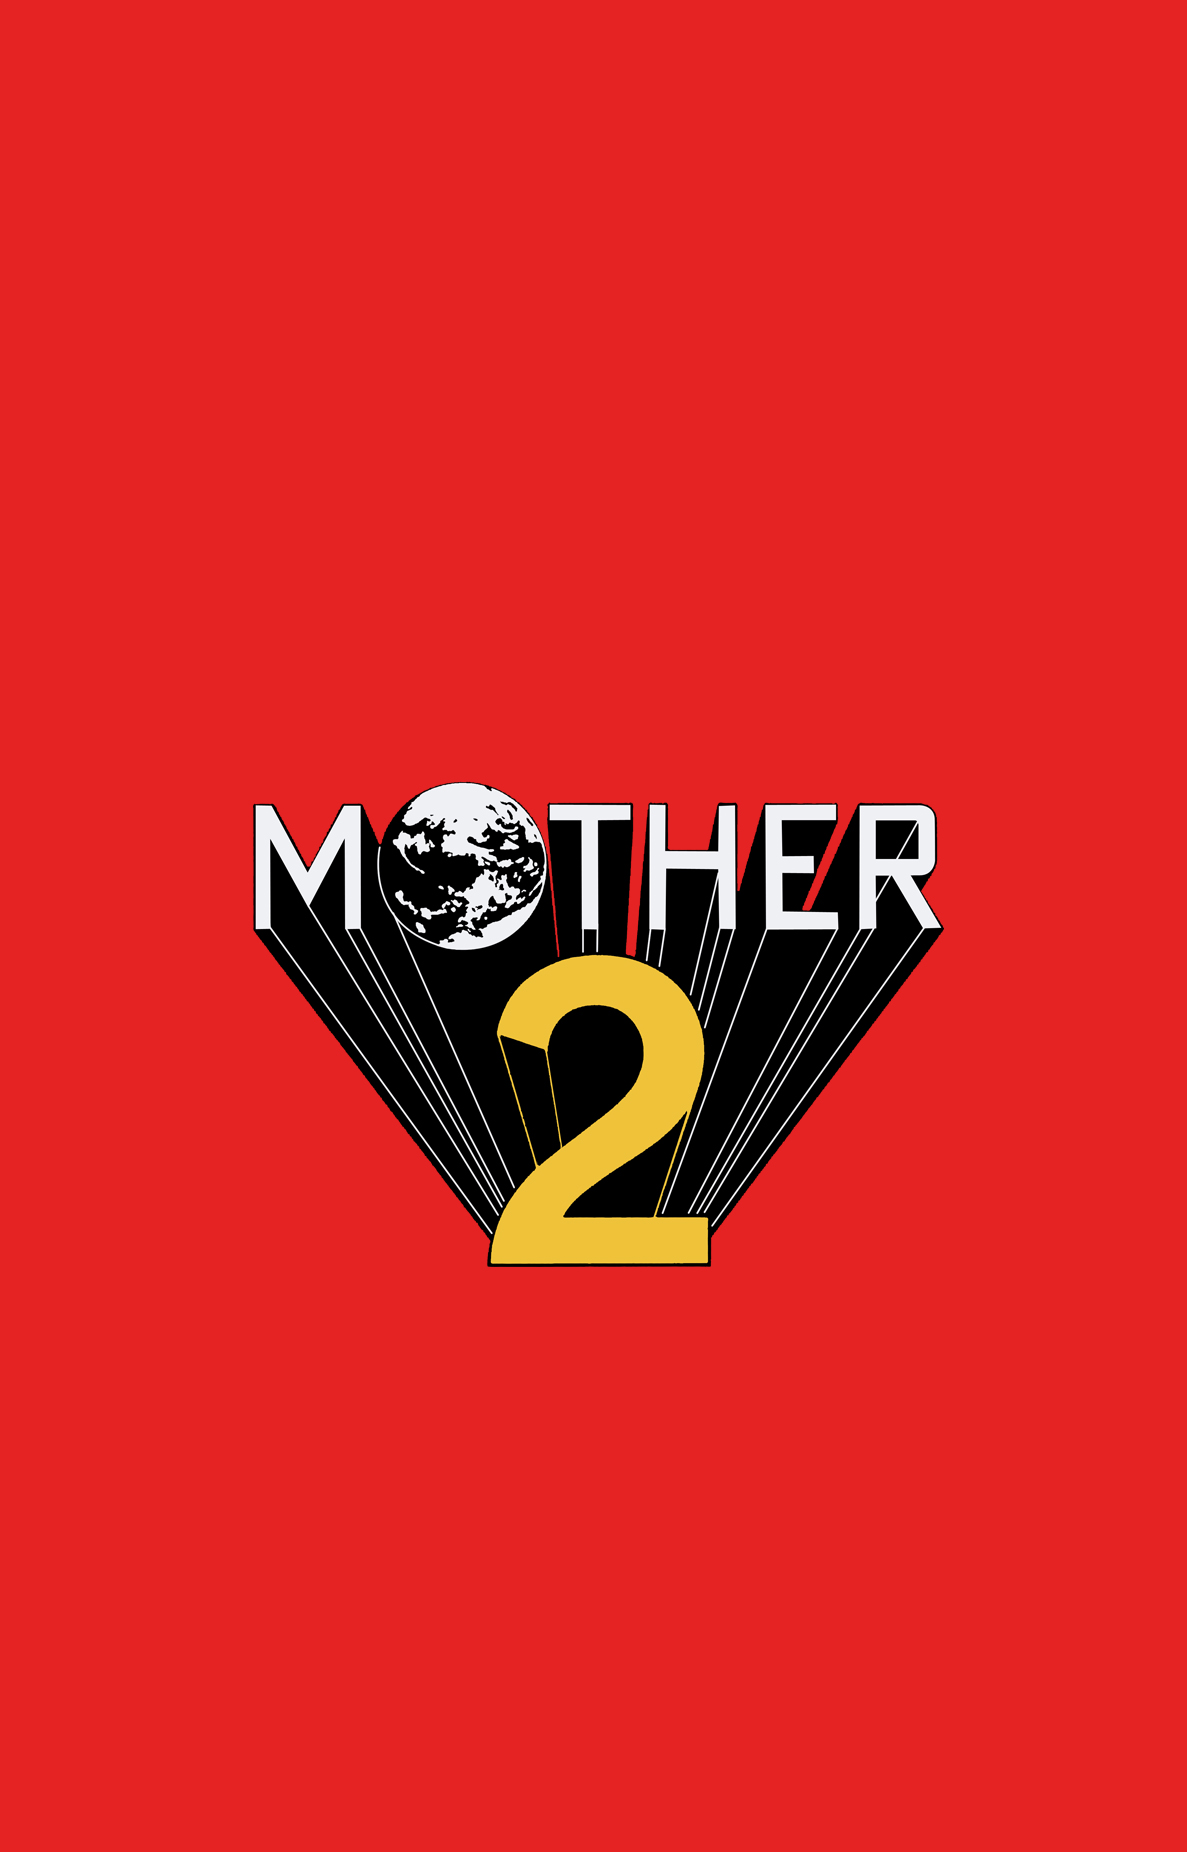 Mother 2 Promo Nintendo Fan Art 32090223 Fanpop 